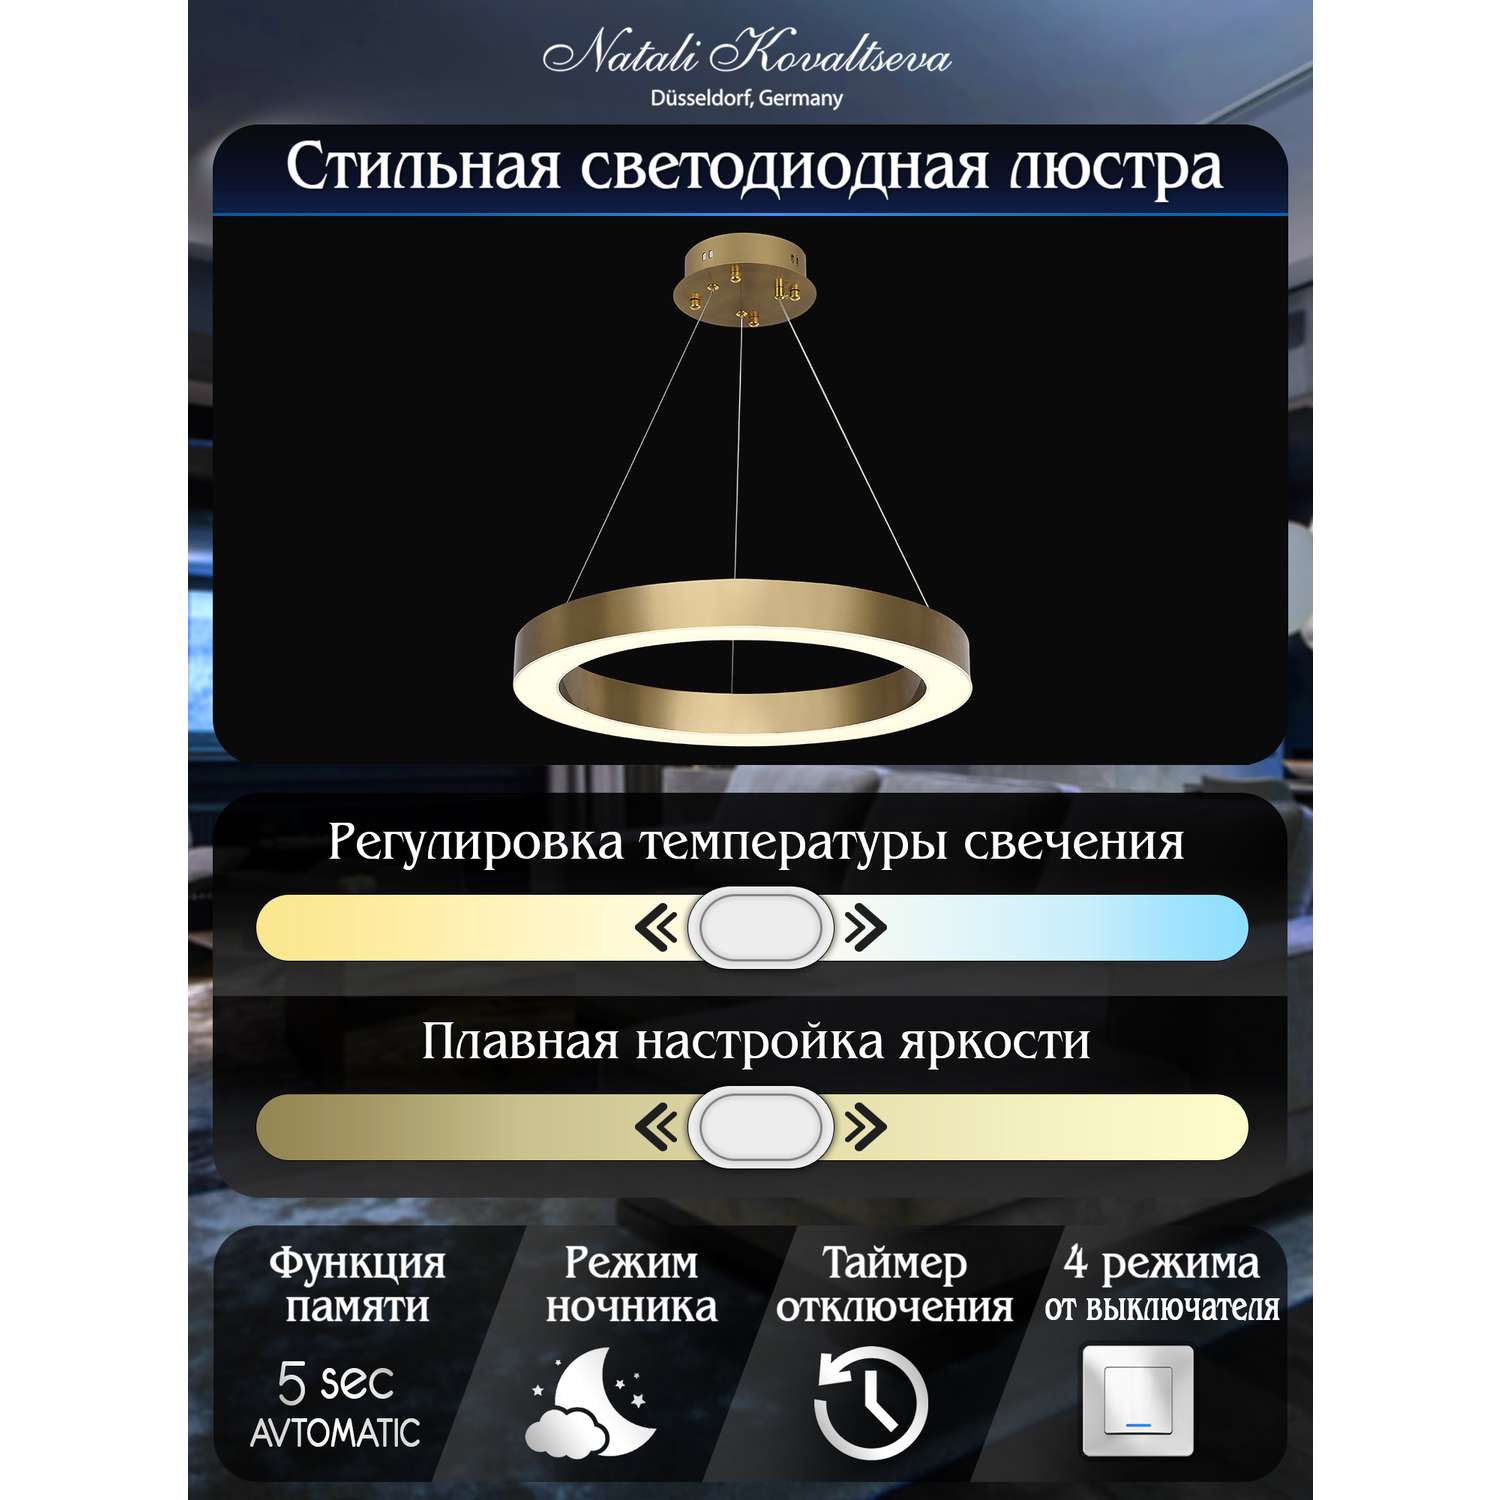 Светодиодный светильник NATALI KOVALTSEVA люстра нимб 120W золото LED - фото 4